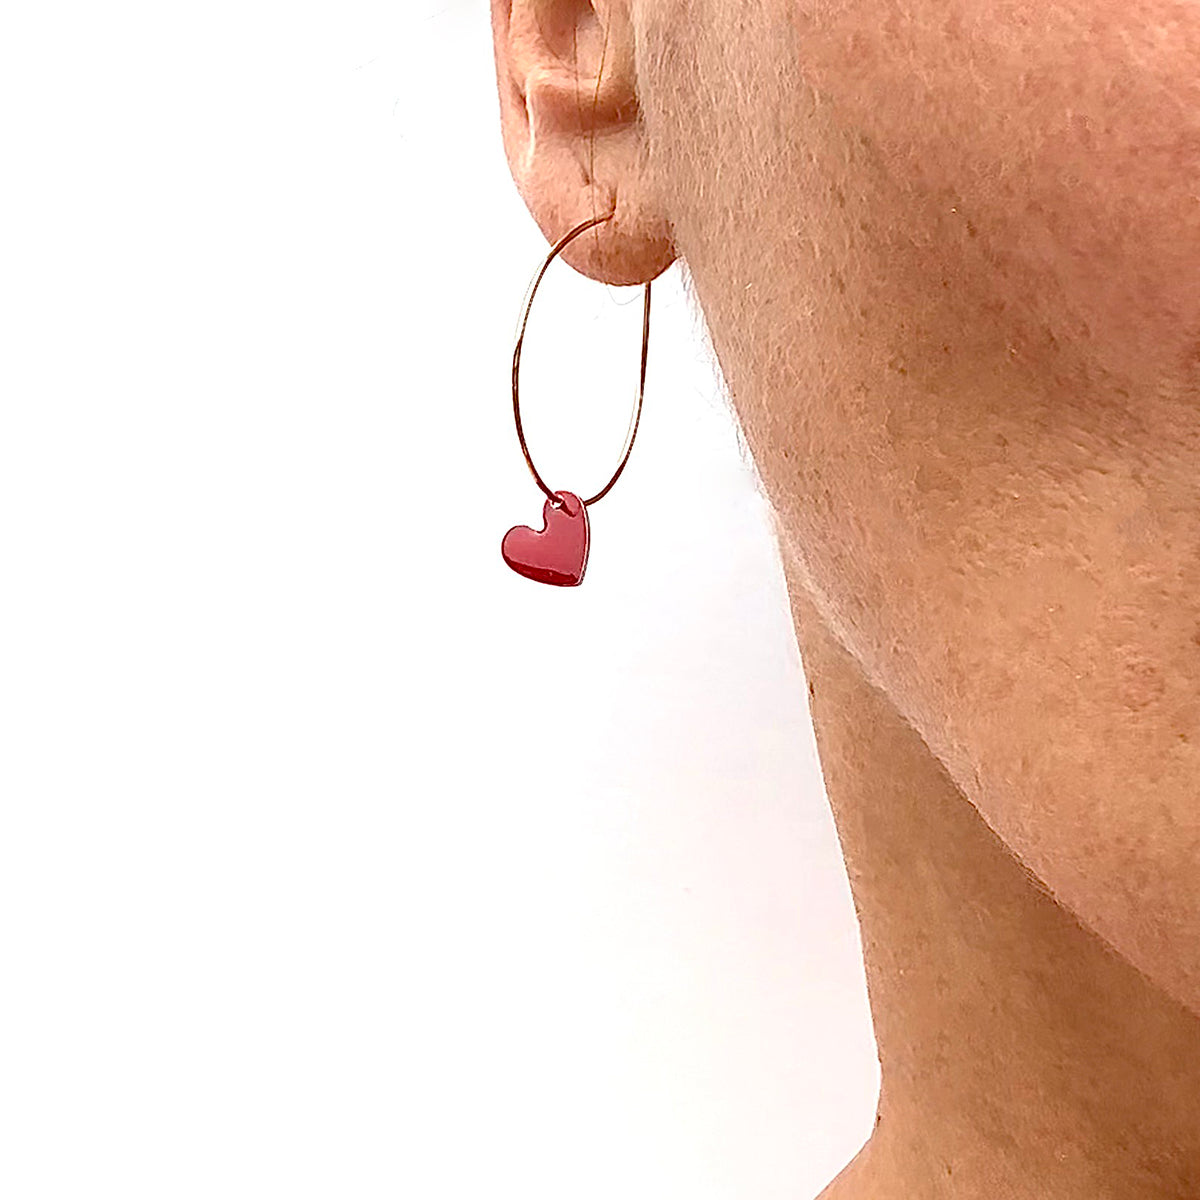 Enamel hearts earrings